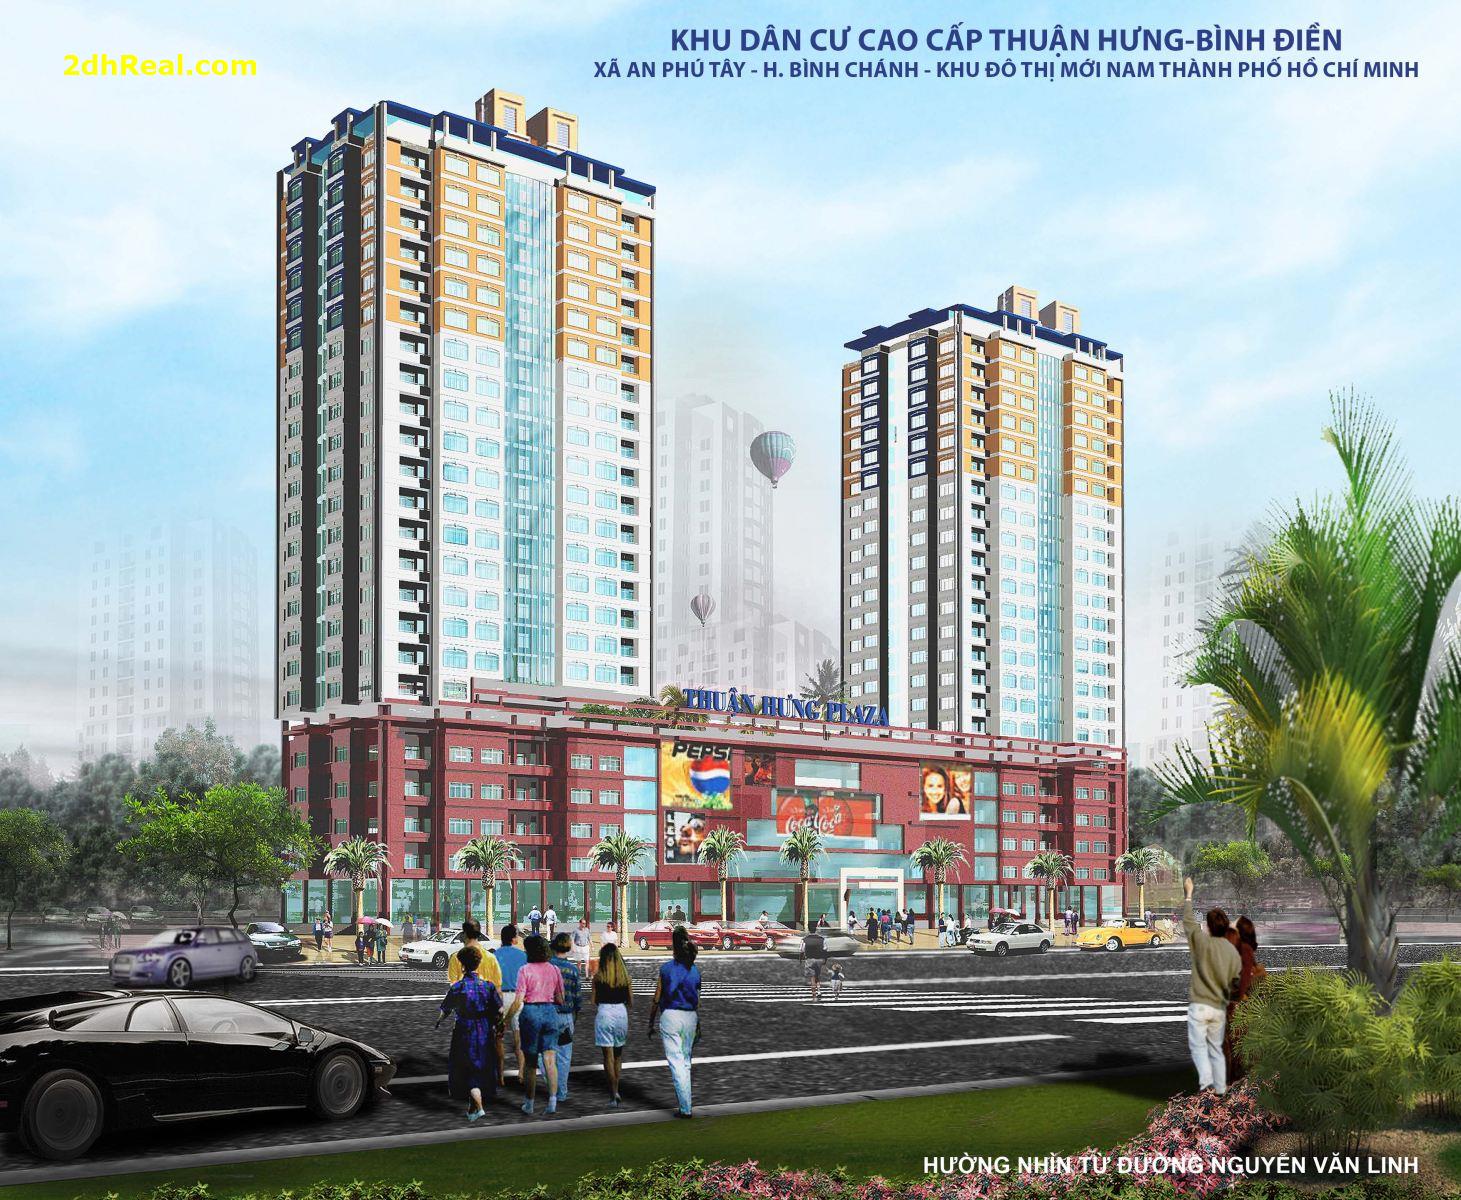 Chuyển nhượng khu Đất 2,2 ha với dự án khu dân cư cao cấp @ : xã An Phú Tây – huyện Bình Chánh – TP.HCM